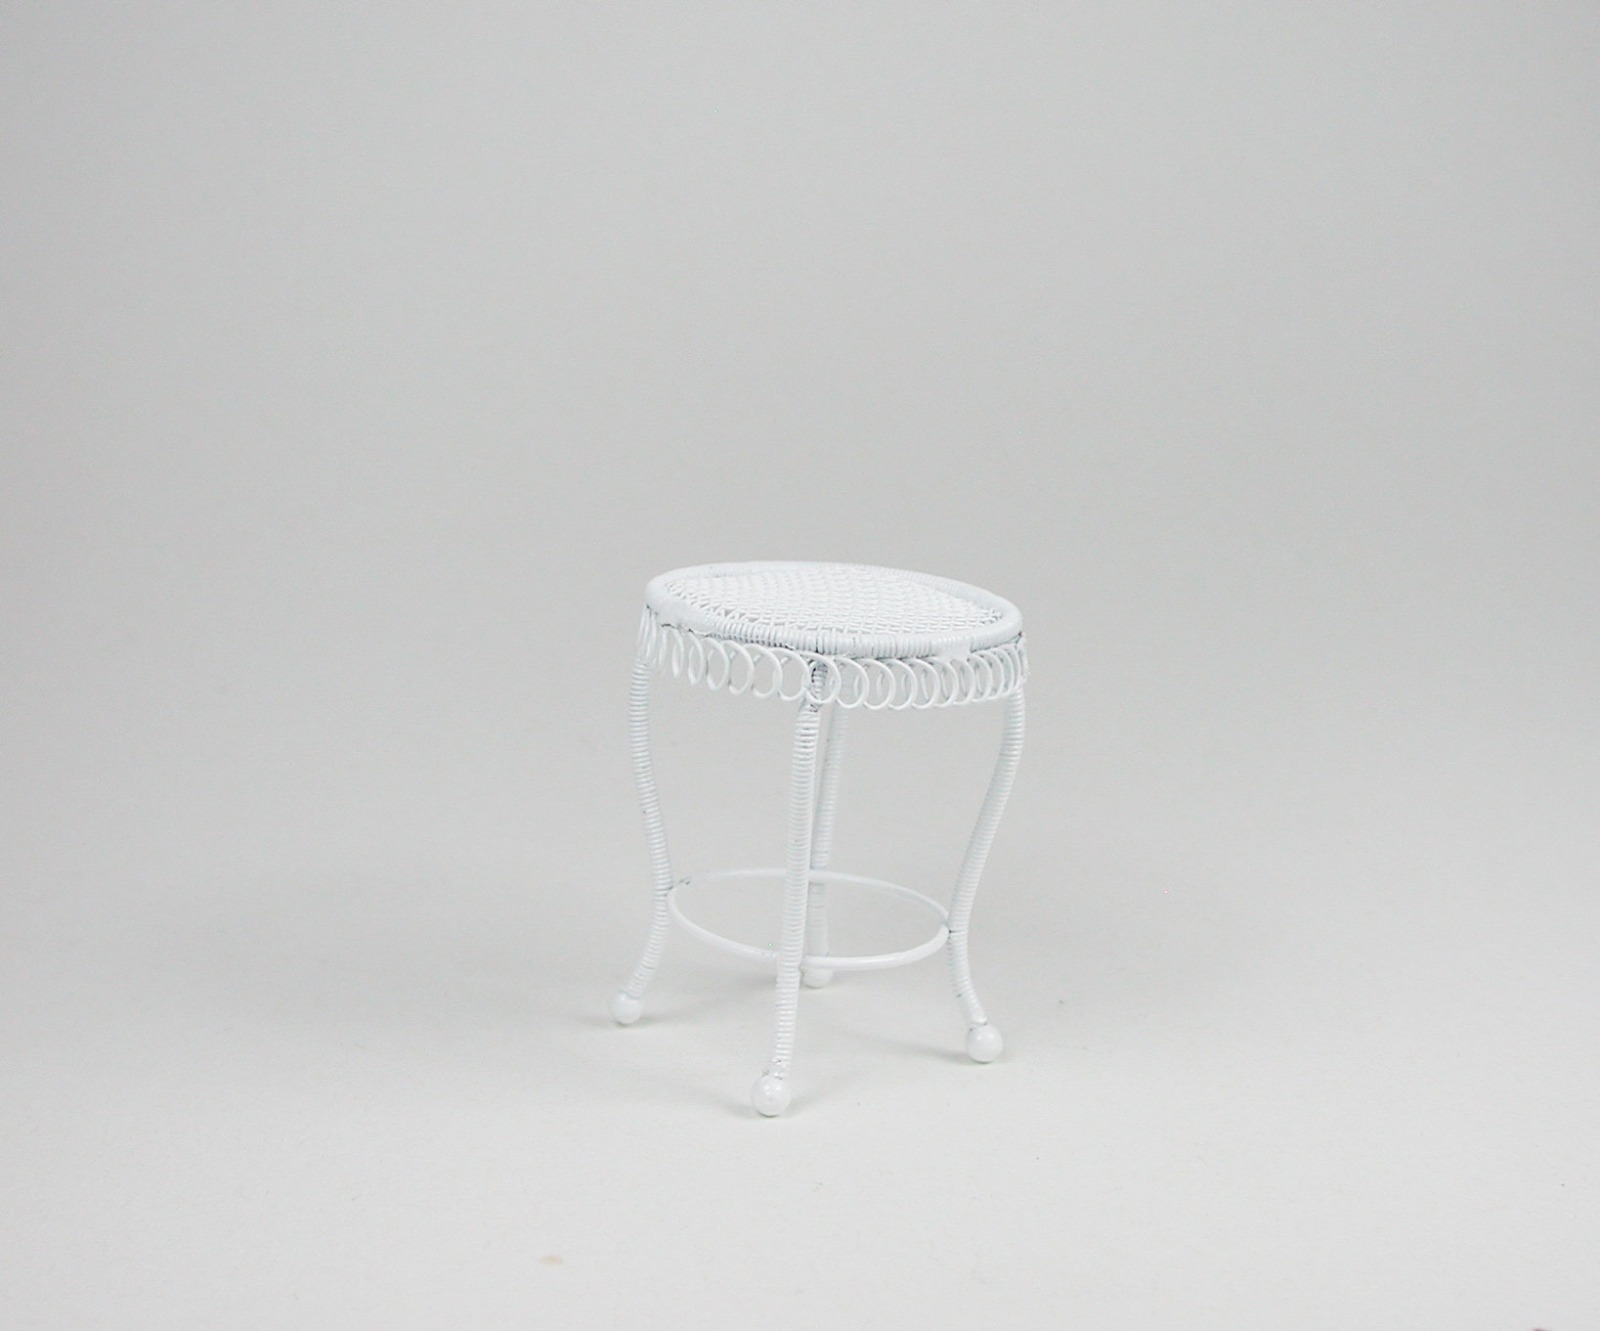 Kleiner runder Tisch aus weißem Metall Beistelltisch 1:12